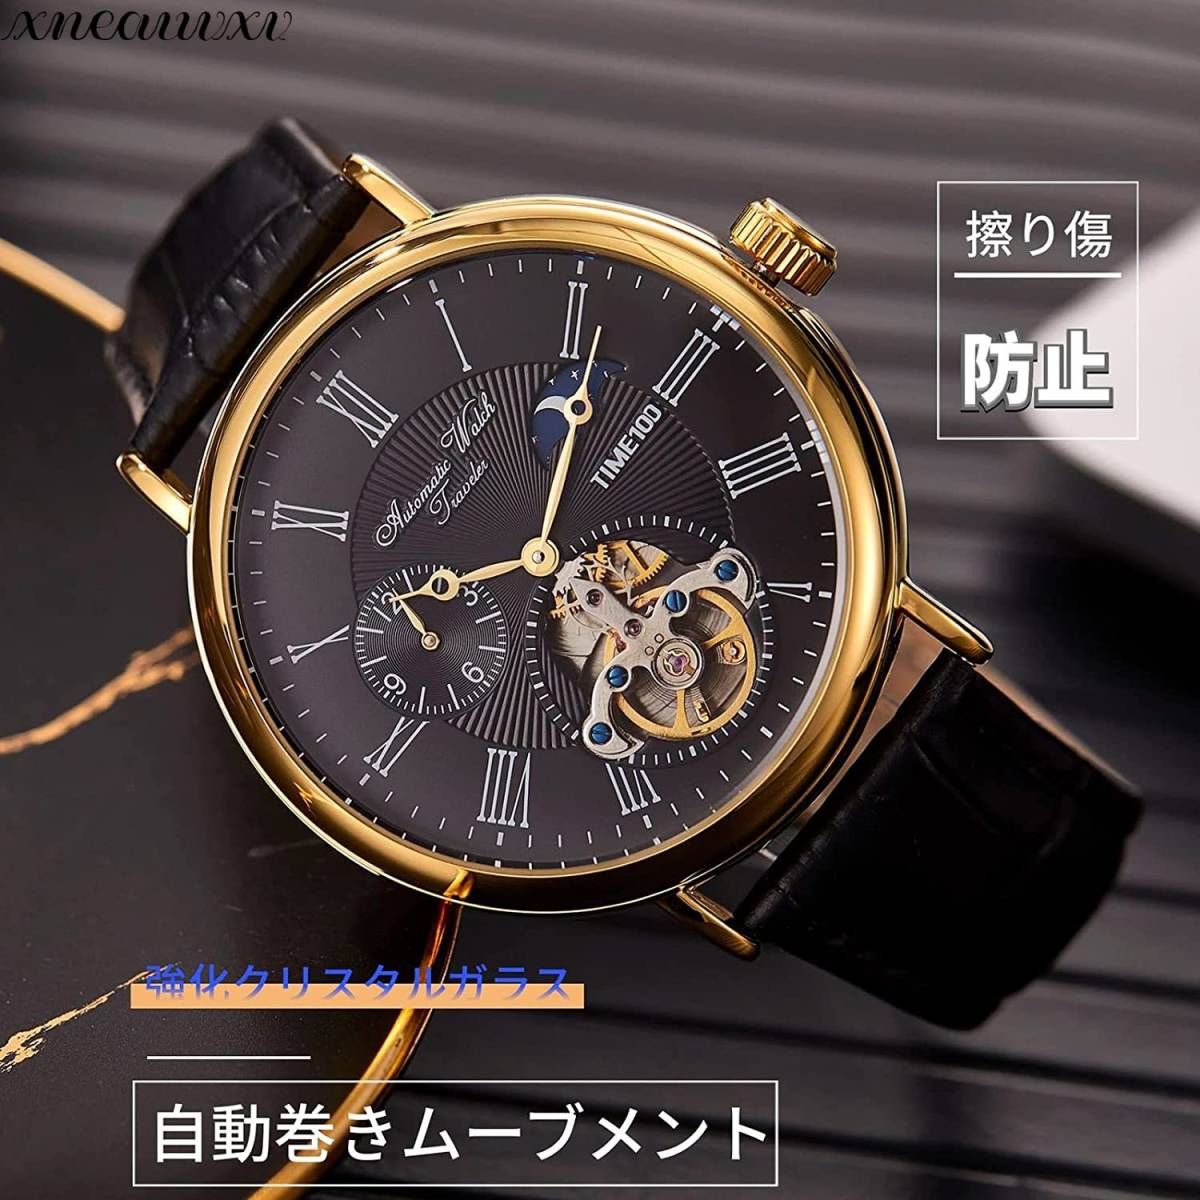 アンティーク調 腕時計 自動巻き スケルトン ブラック メンズ 高品質